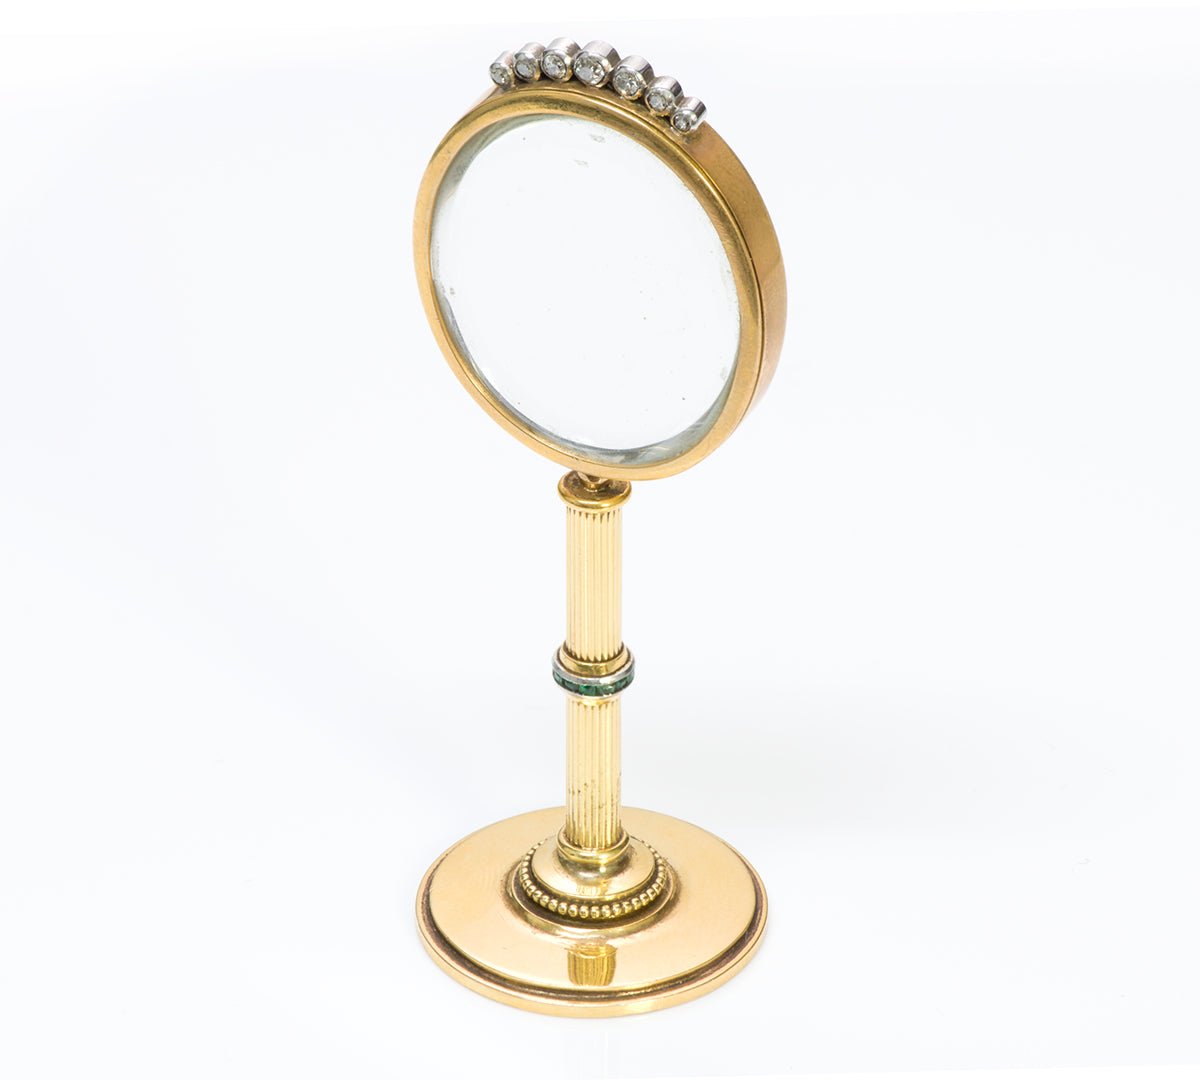 Antique Gold Portrait Porcelain Gem Set Miniature Vanity Standing Mirror - DSF Antique Jewelry